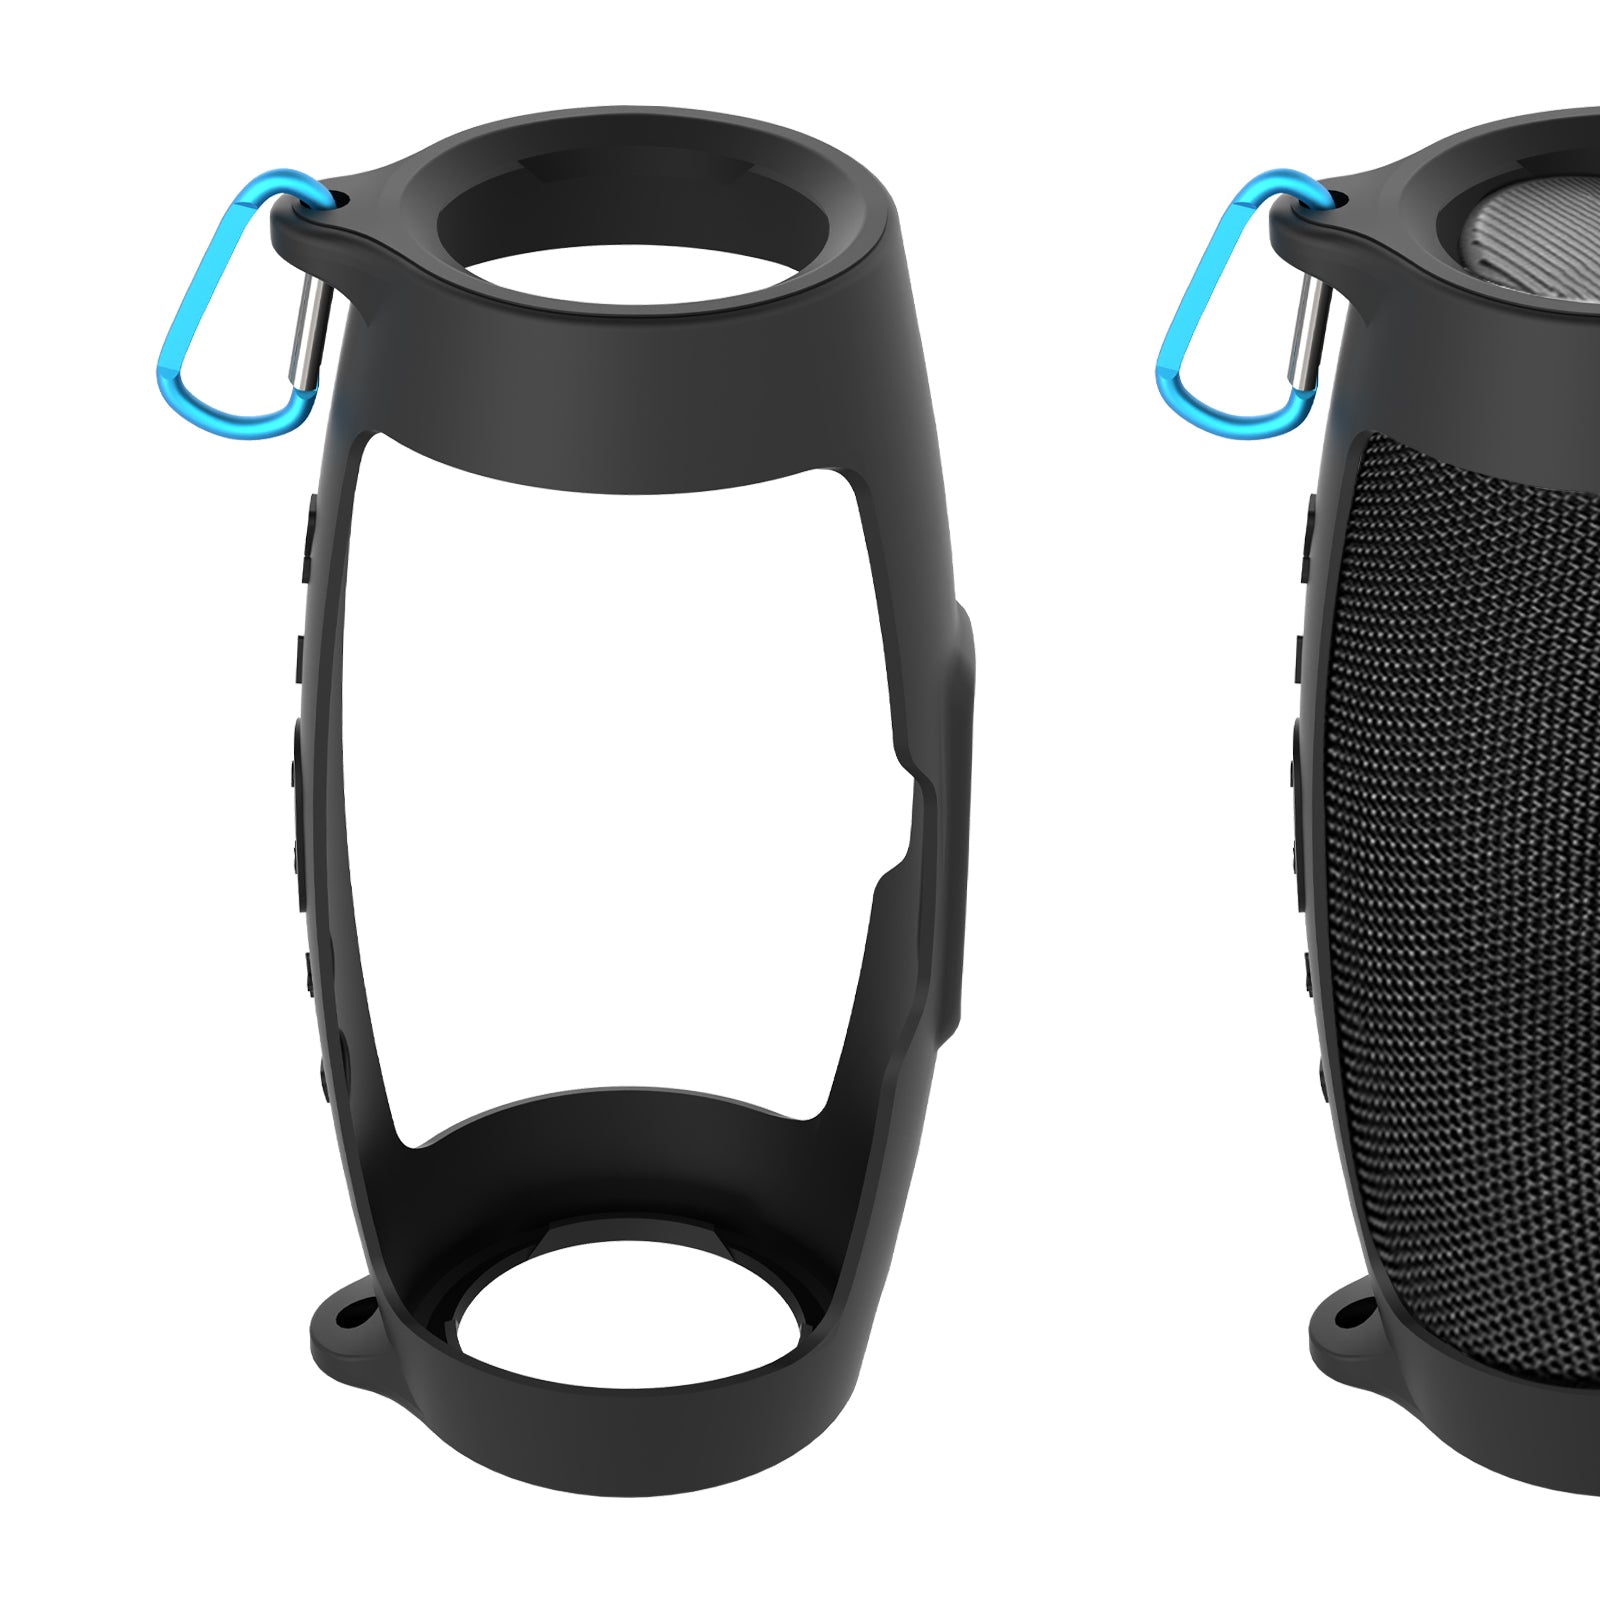 Buy JBL Charge 4 - Waterproof Portable Bluetooth Speaker: Speakers Deals